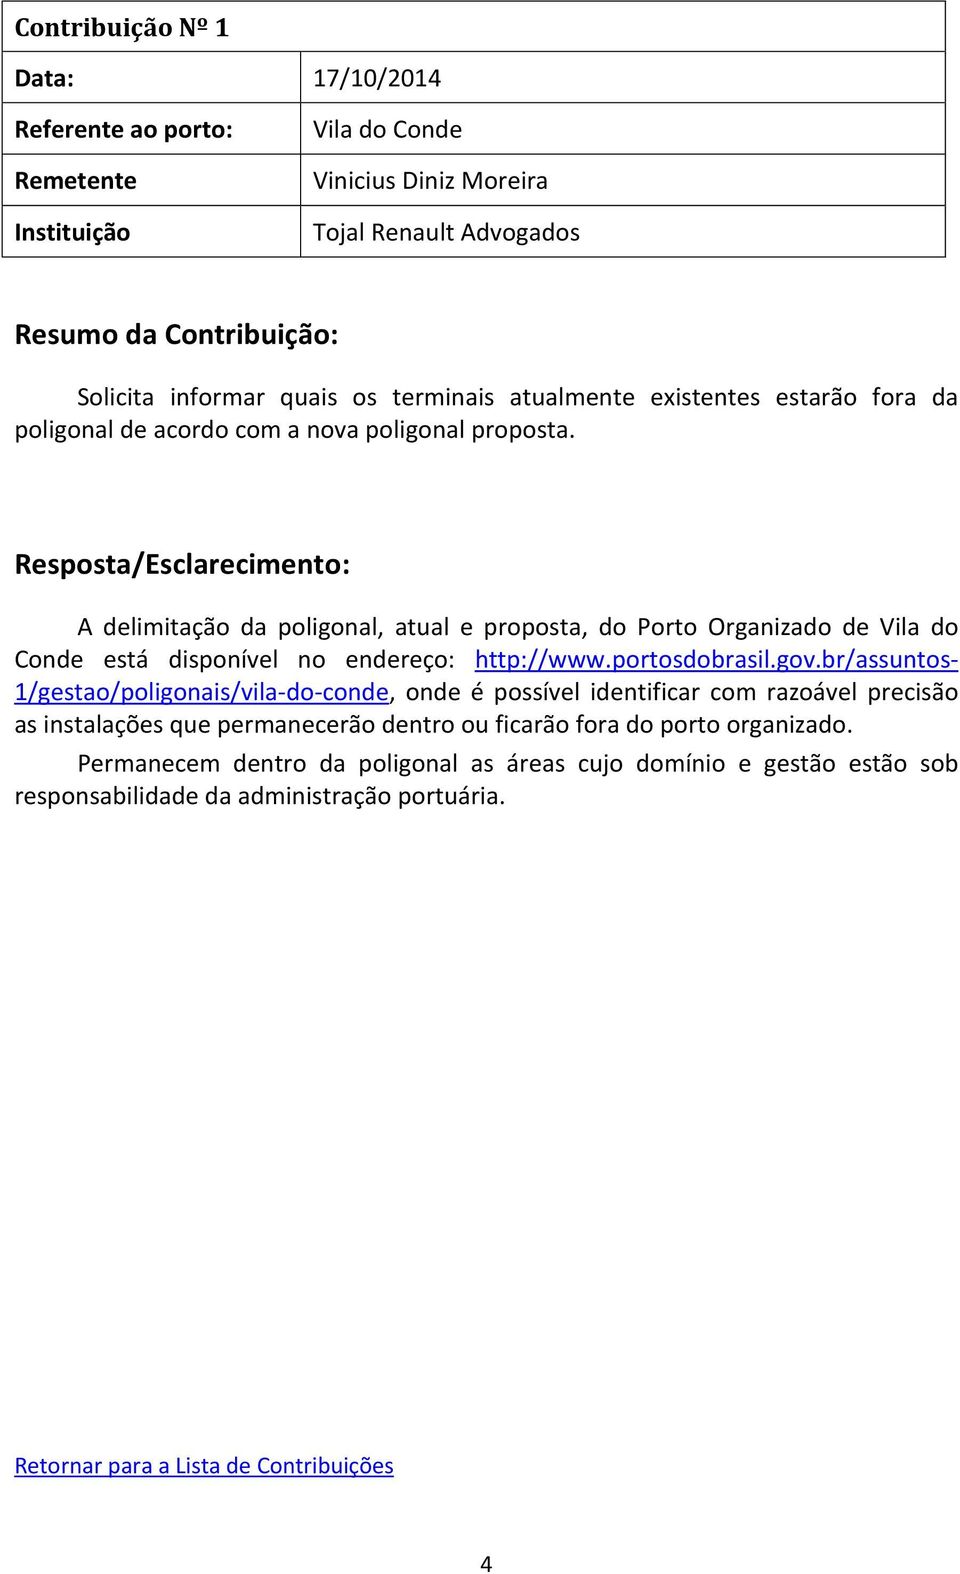 A delimitação da poligonal, atual e proposta, do Porto Organizado de Vila do Conde está disponível no endereço: http://www.portosdobrasil.gov.